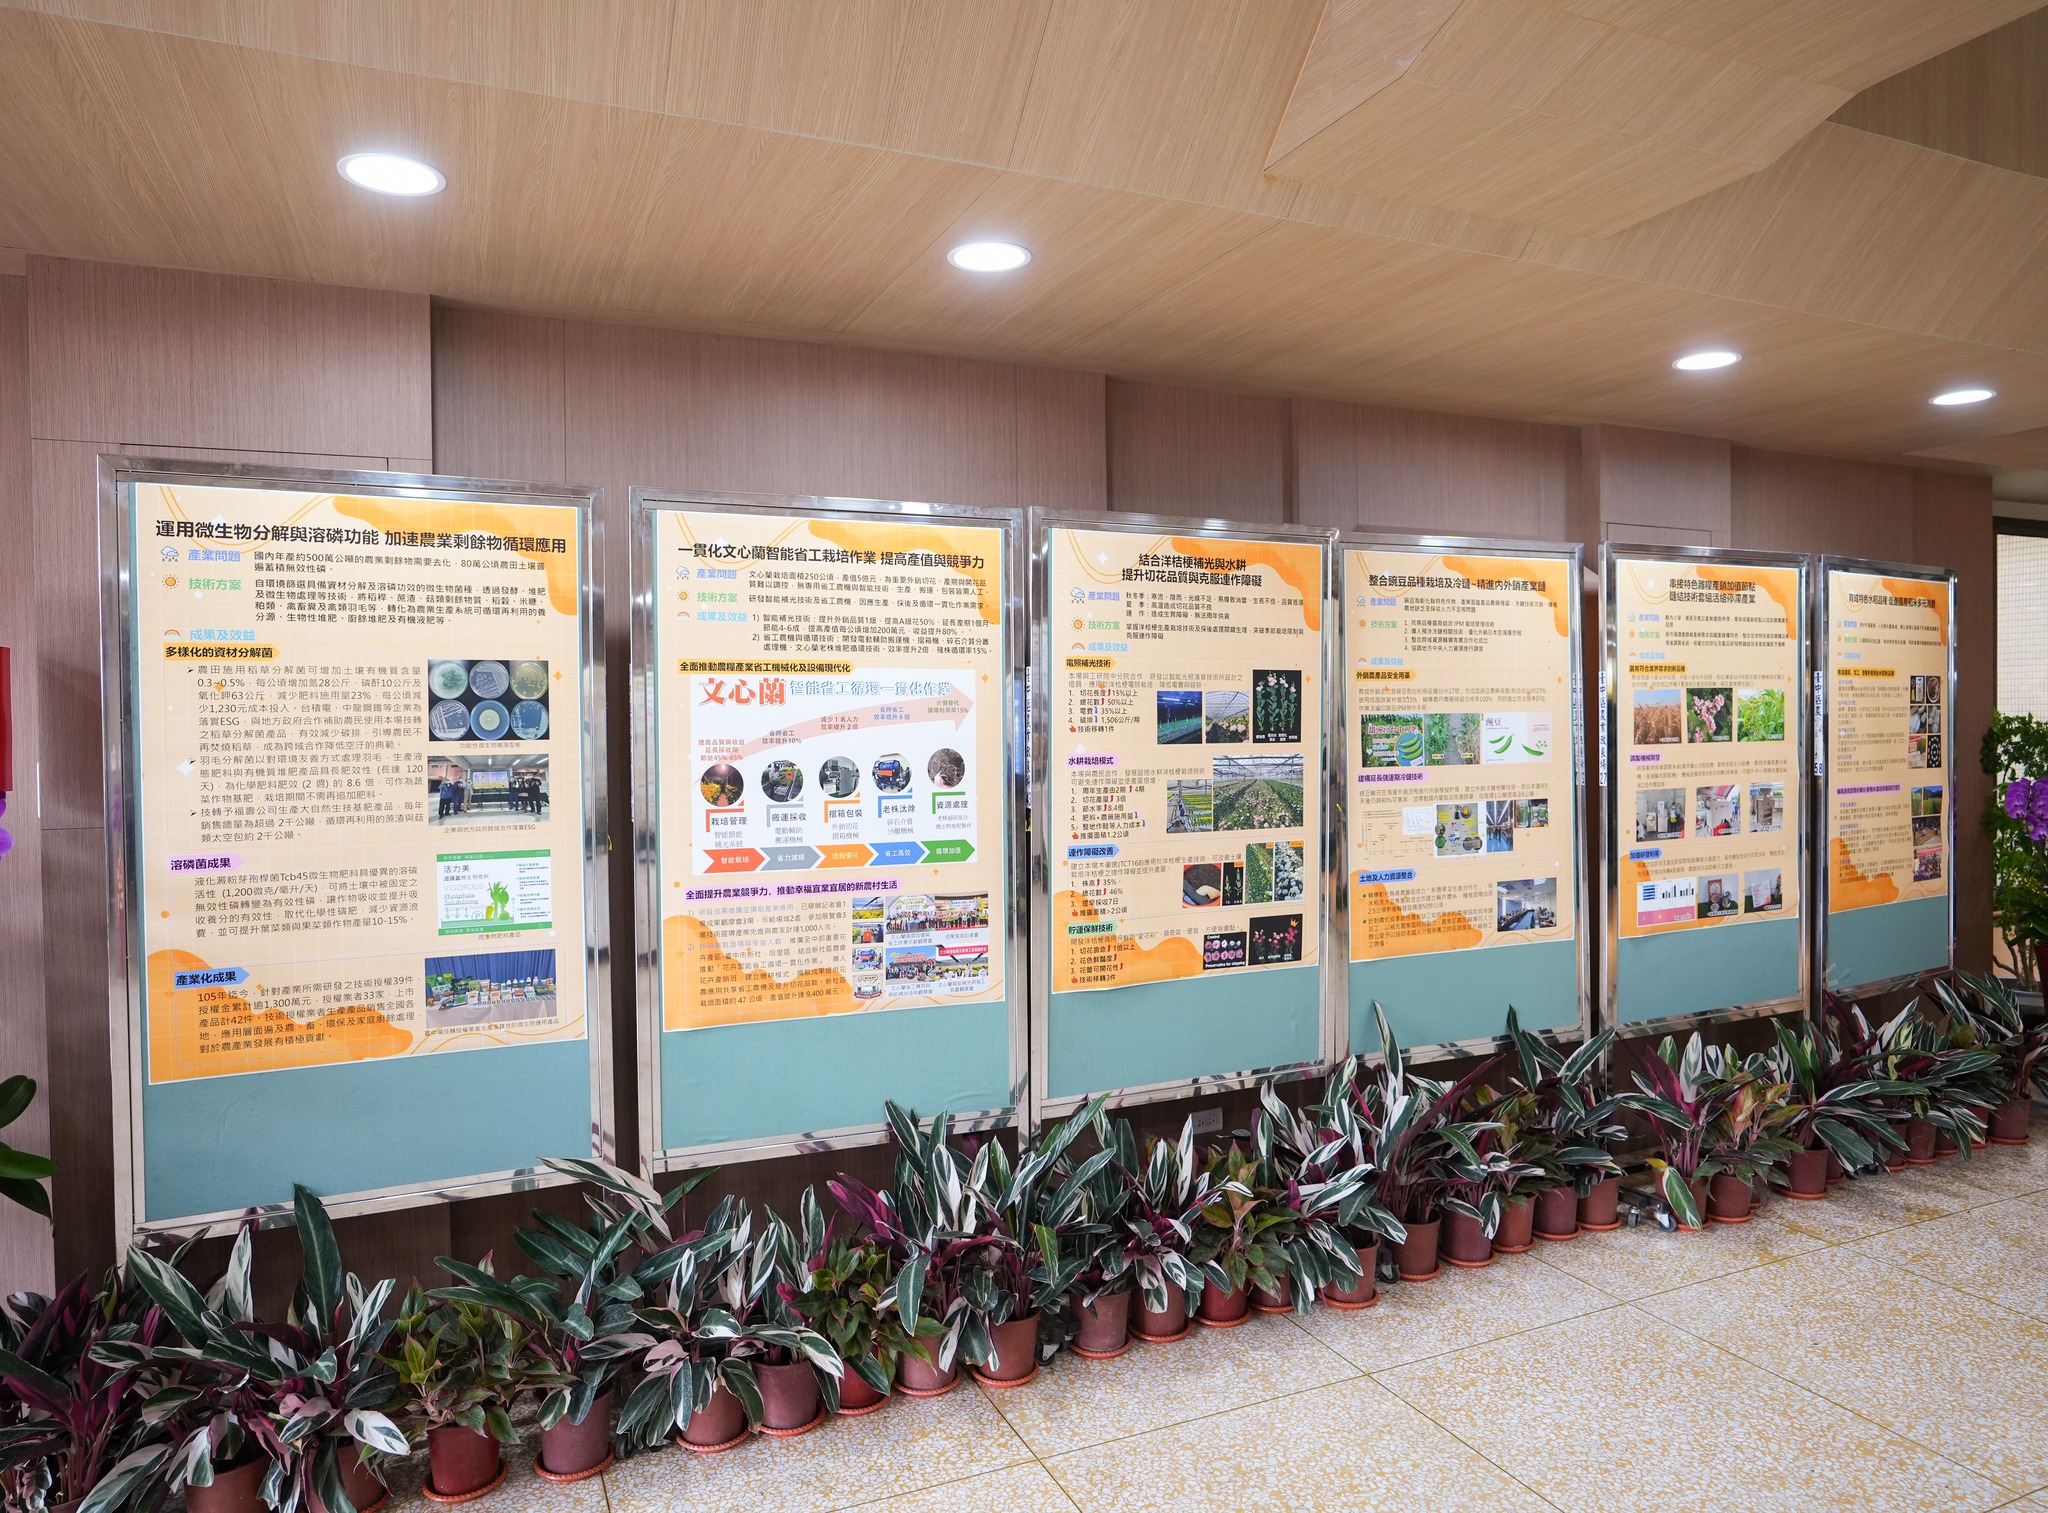 現場展示本場轄區內重要作物產業問題及對應研發成果海報。